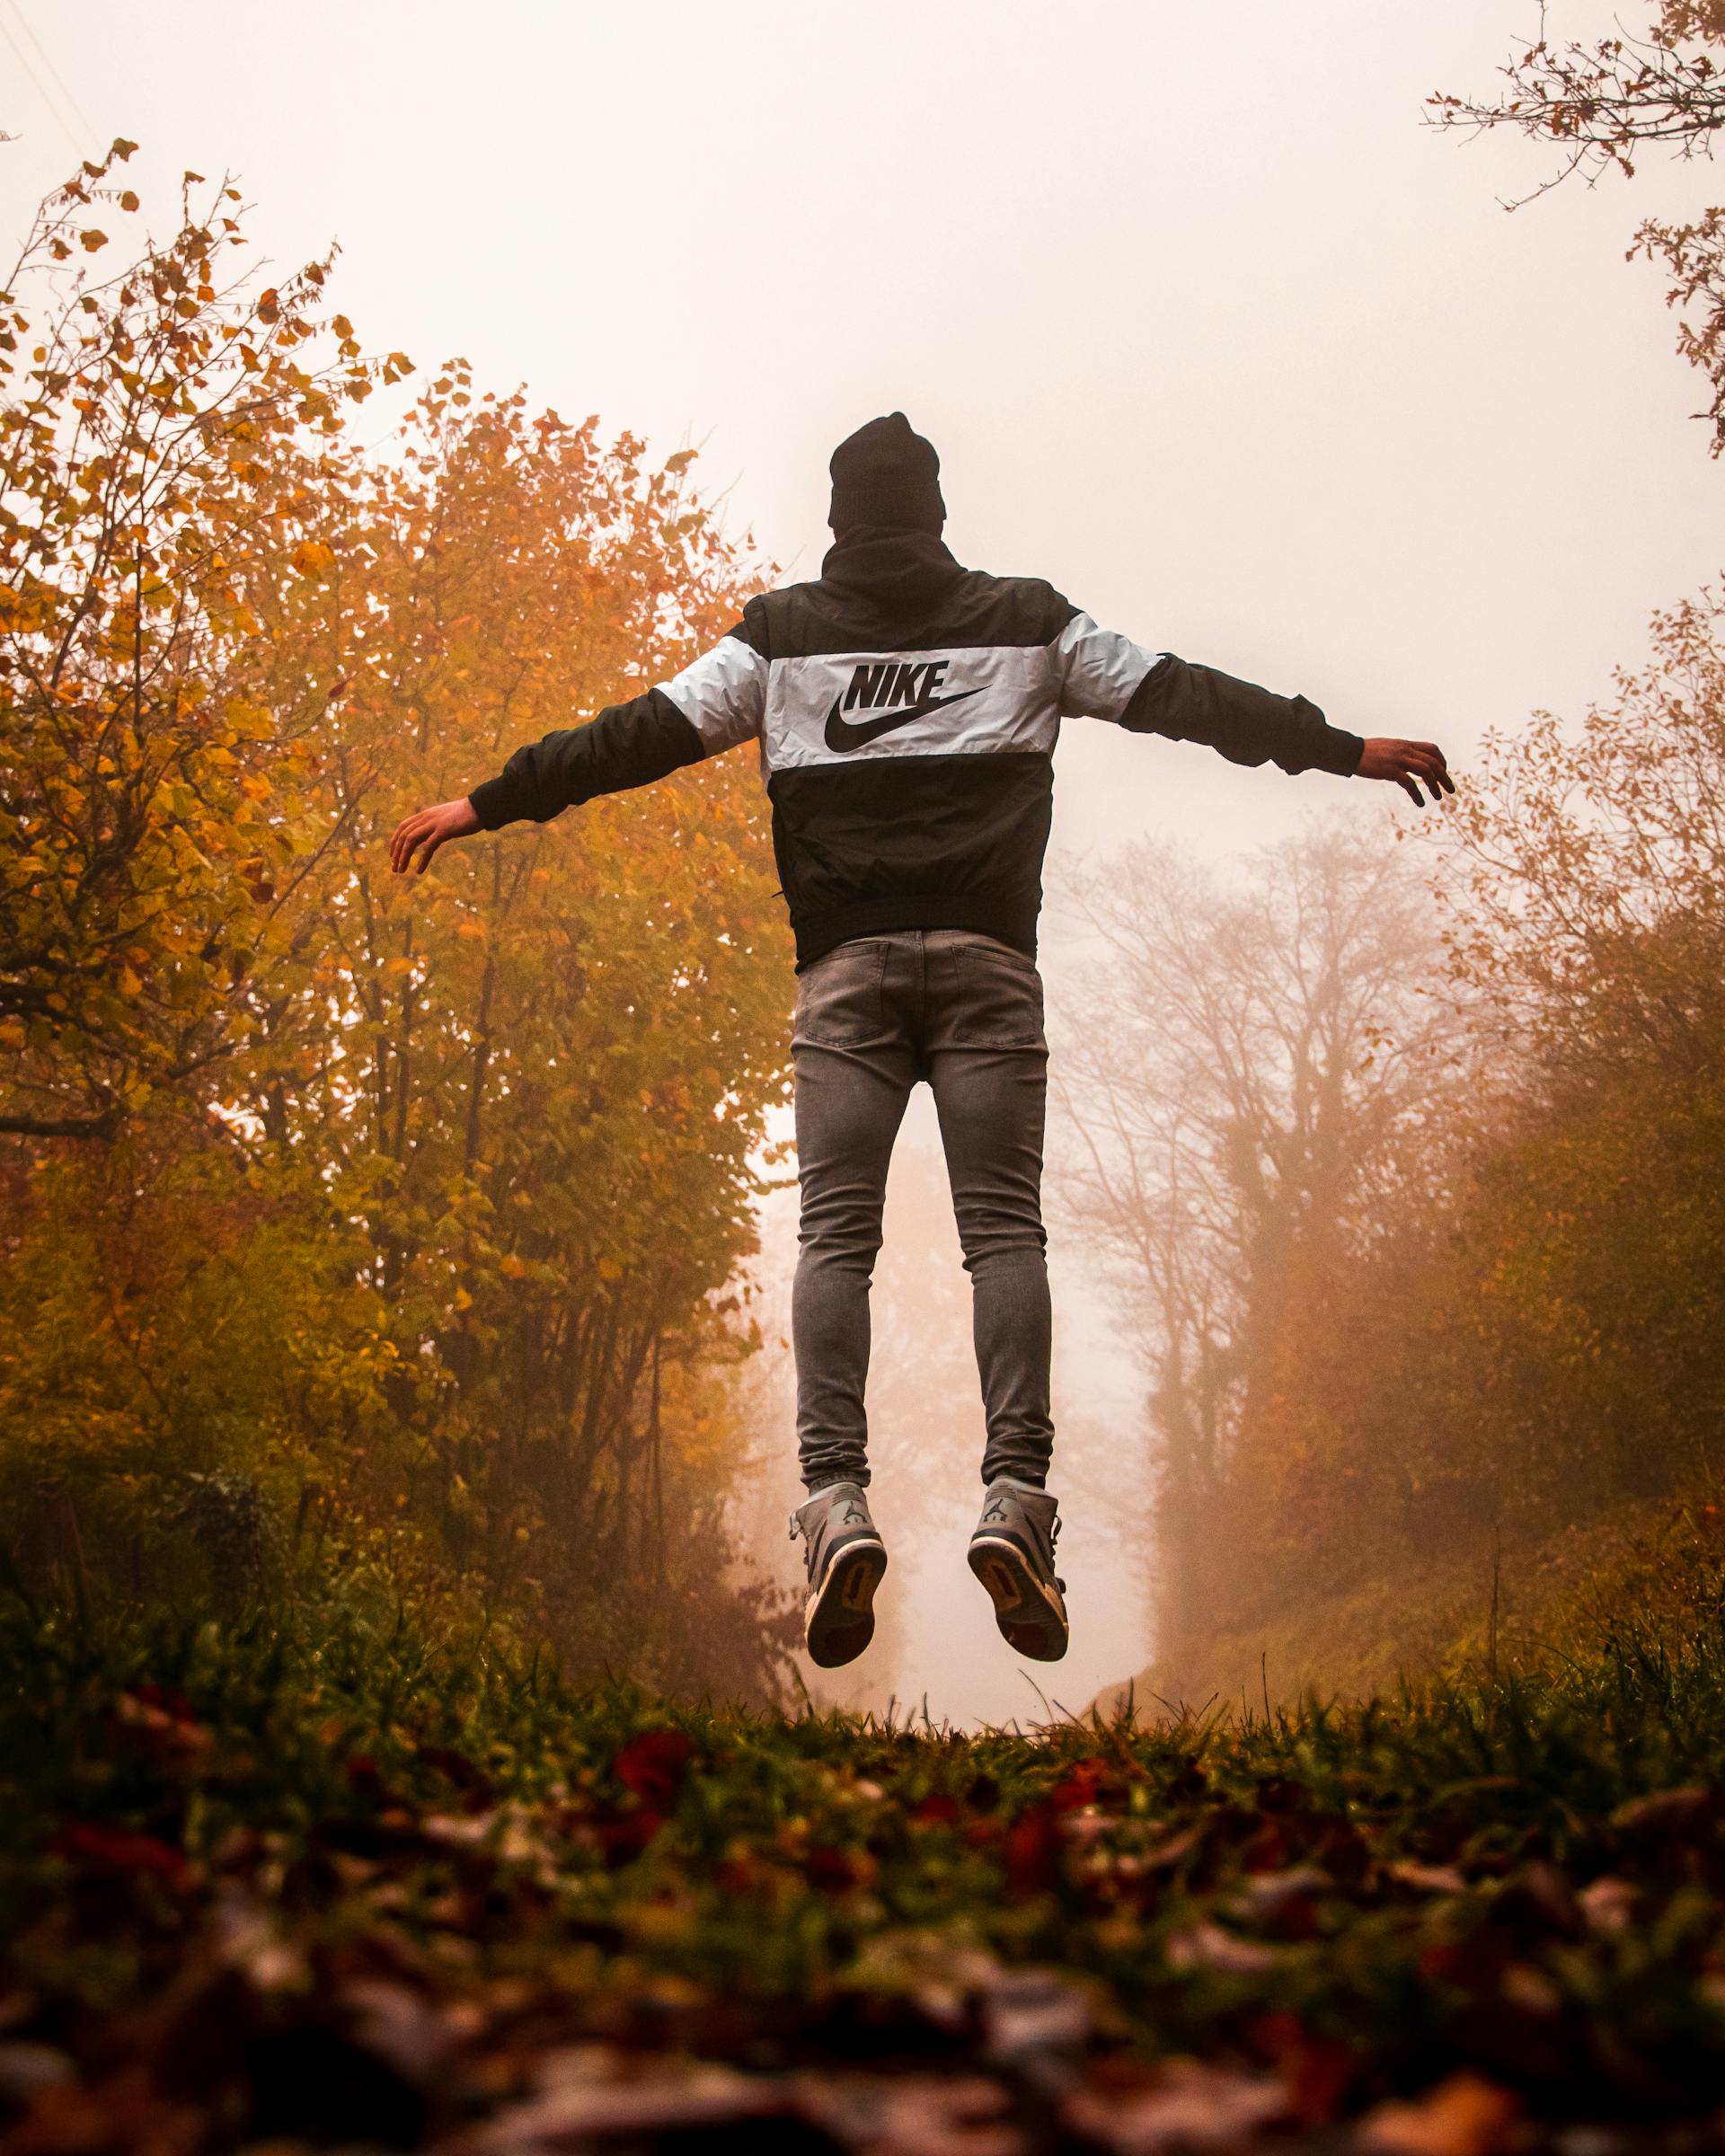 Un hombre con sudadera Nike y pantalones grises saltando en el aire | Fuente: Pexels